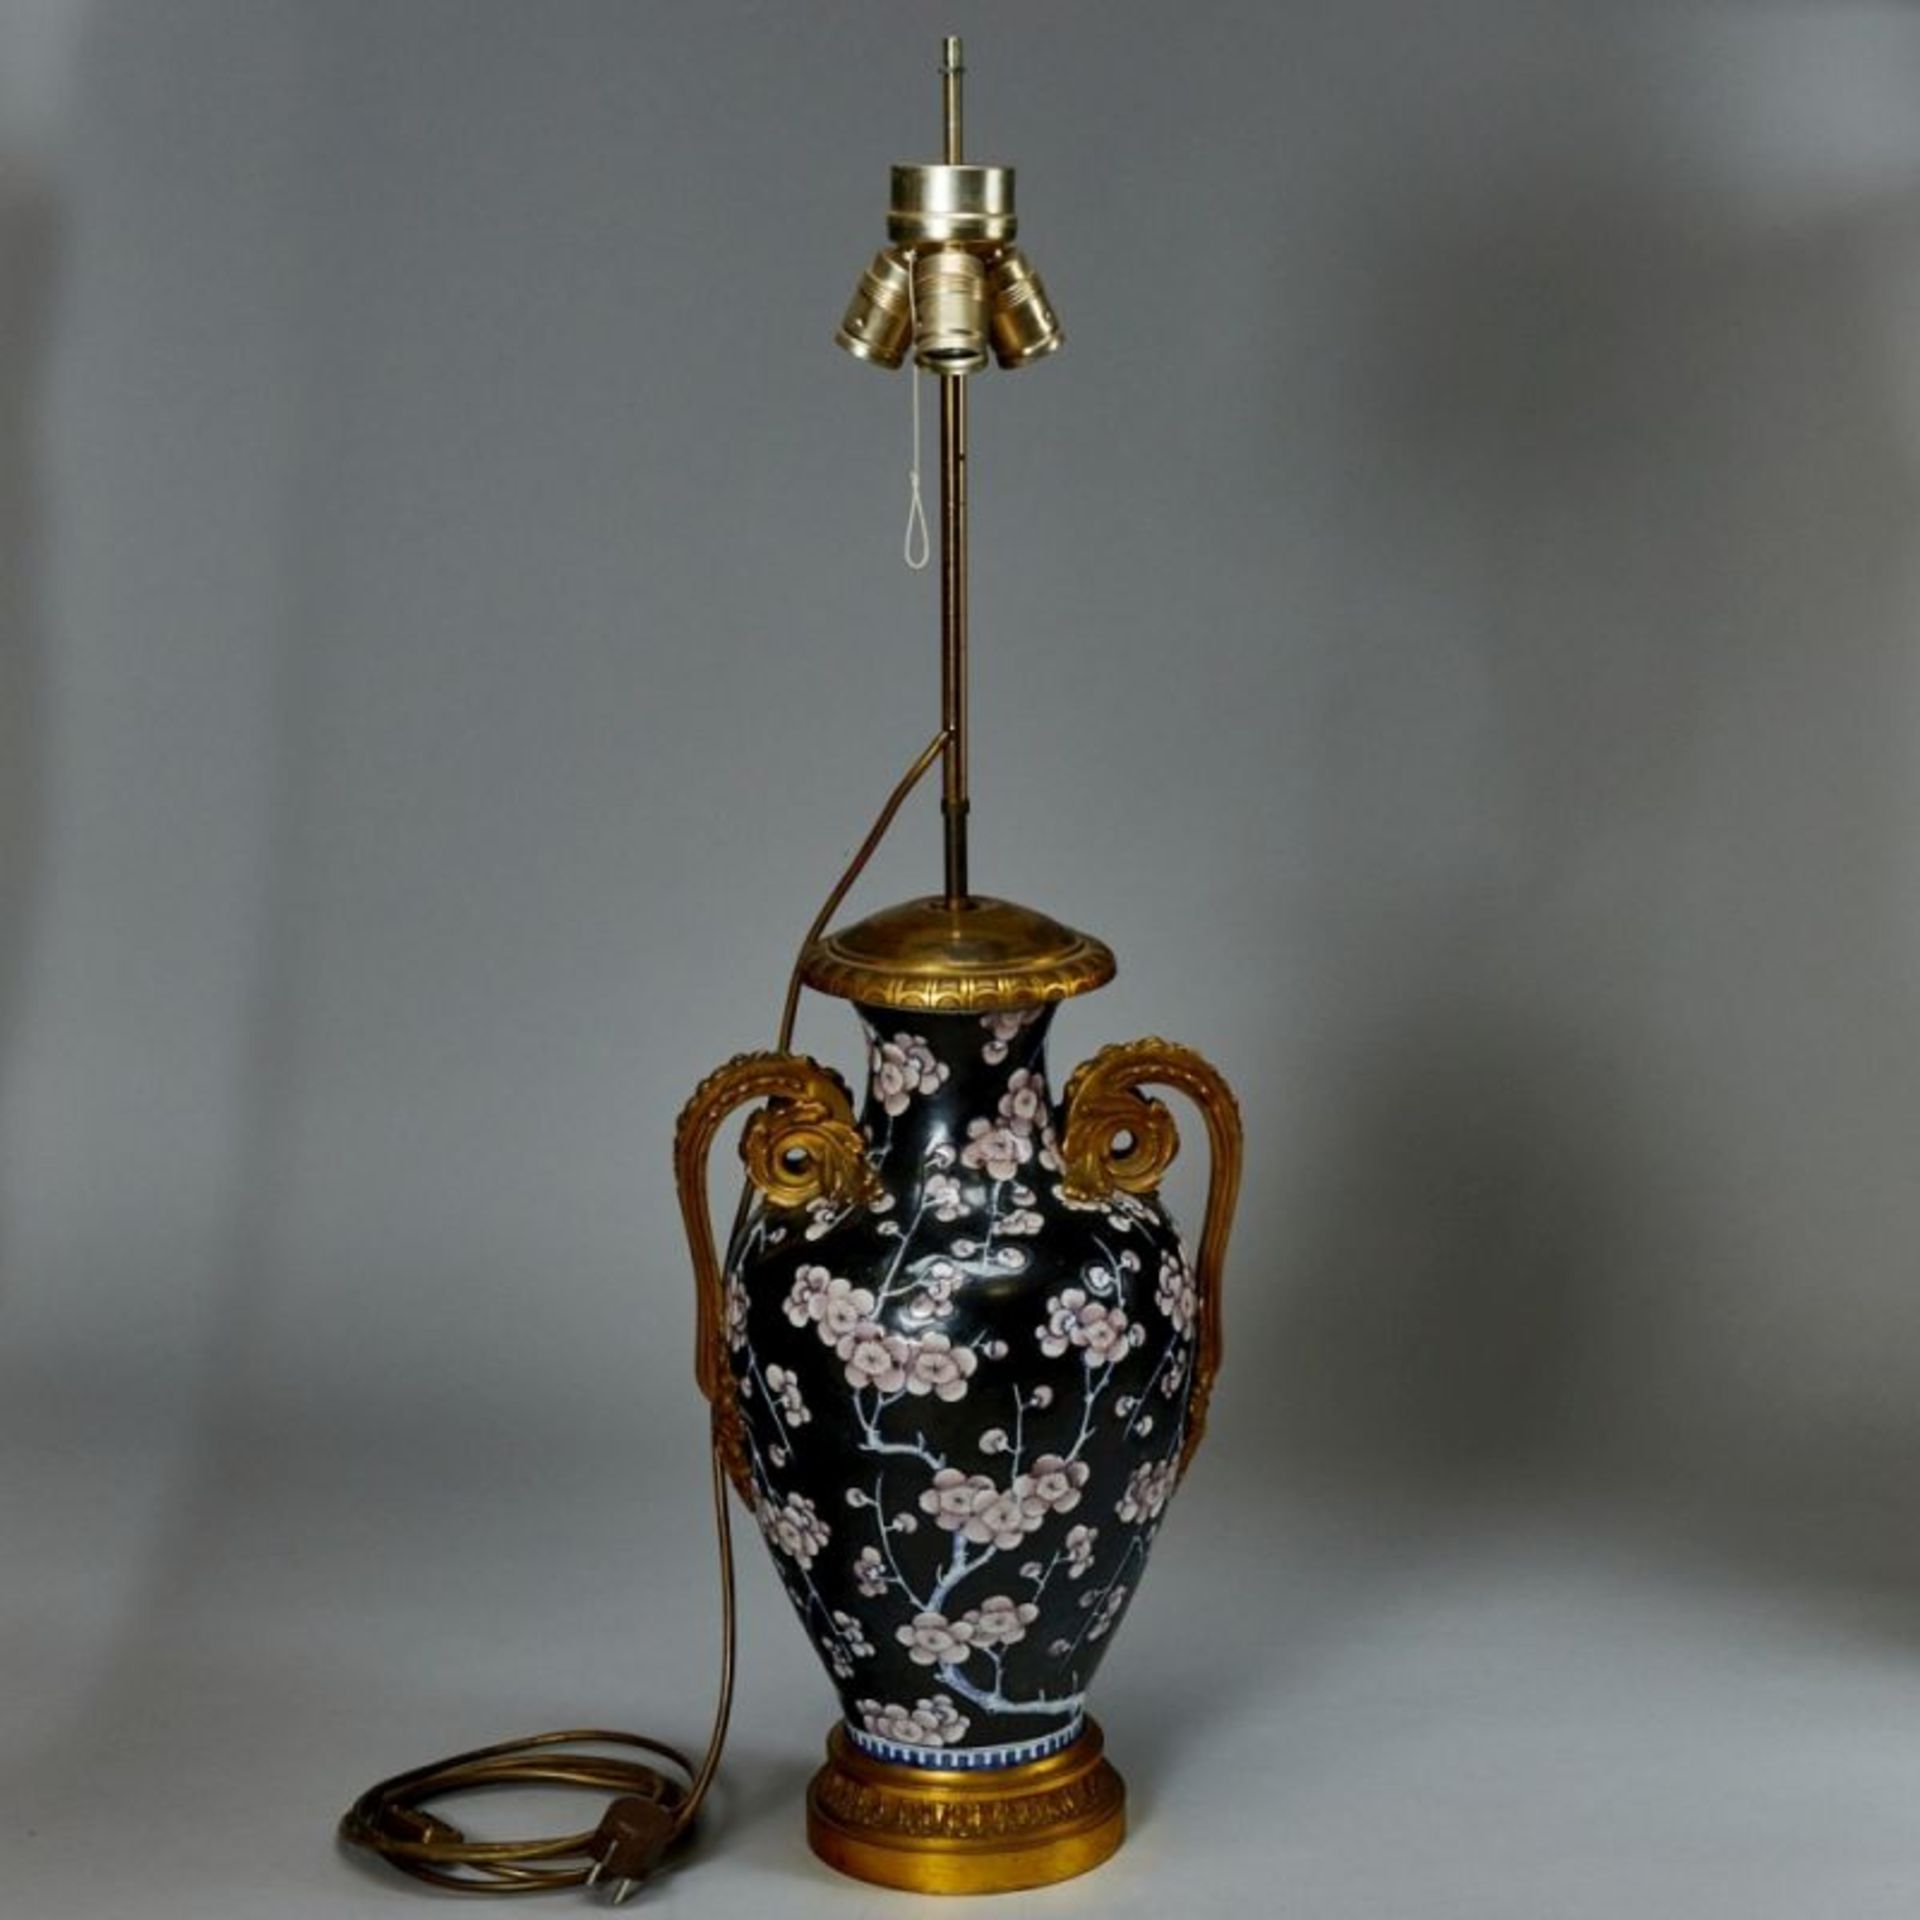 Export Vasenlampe, China / Deutschland, 19. Jahrhundert - Bild 3 aus 3